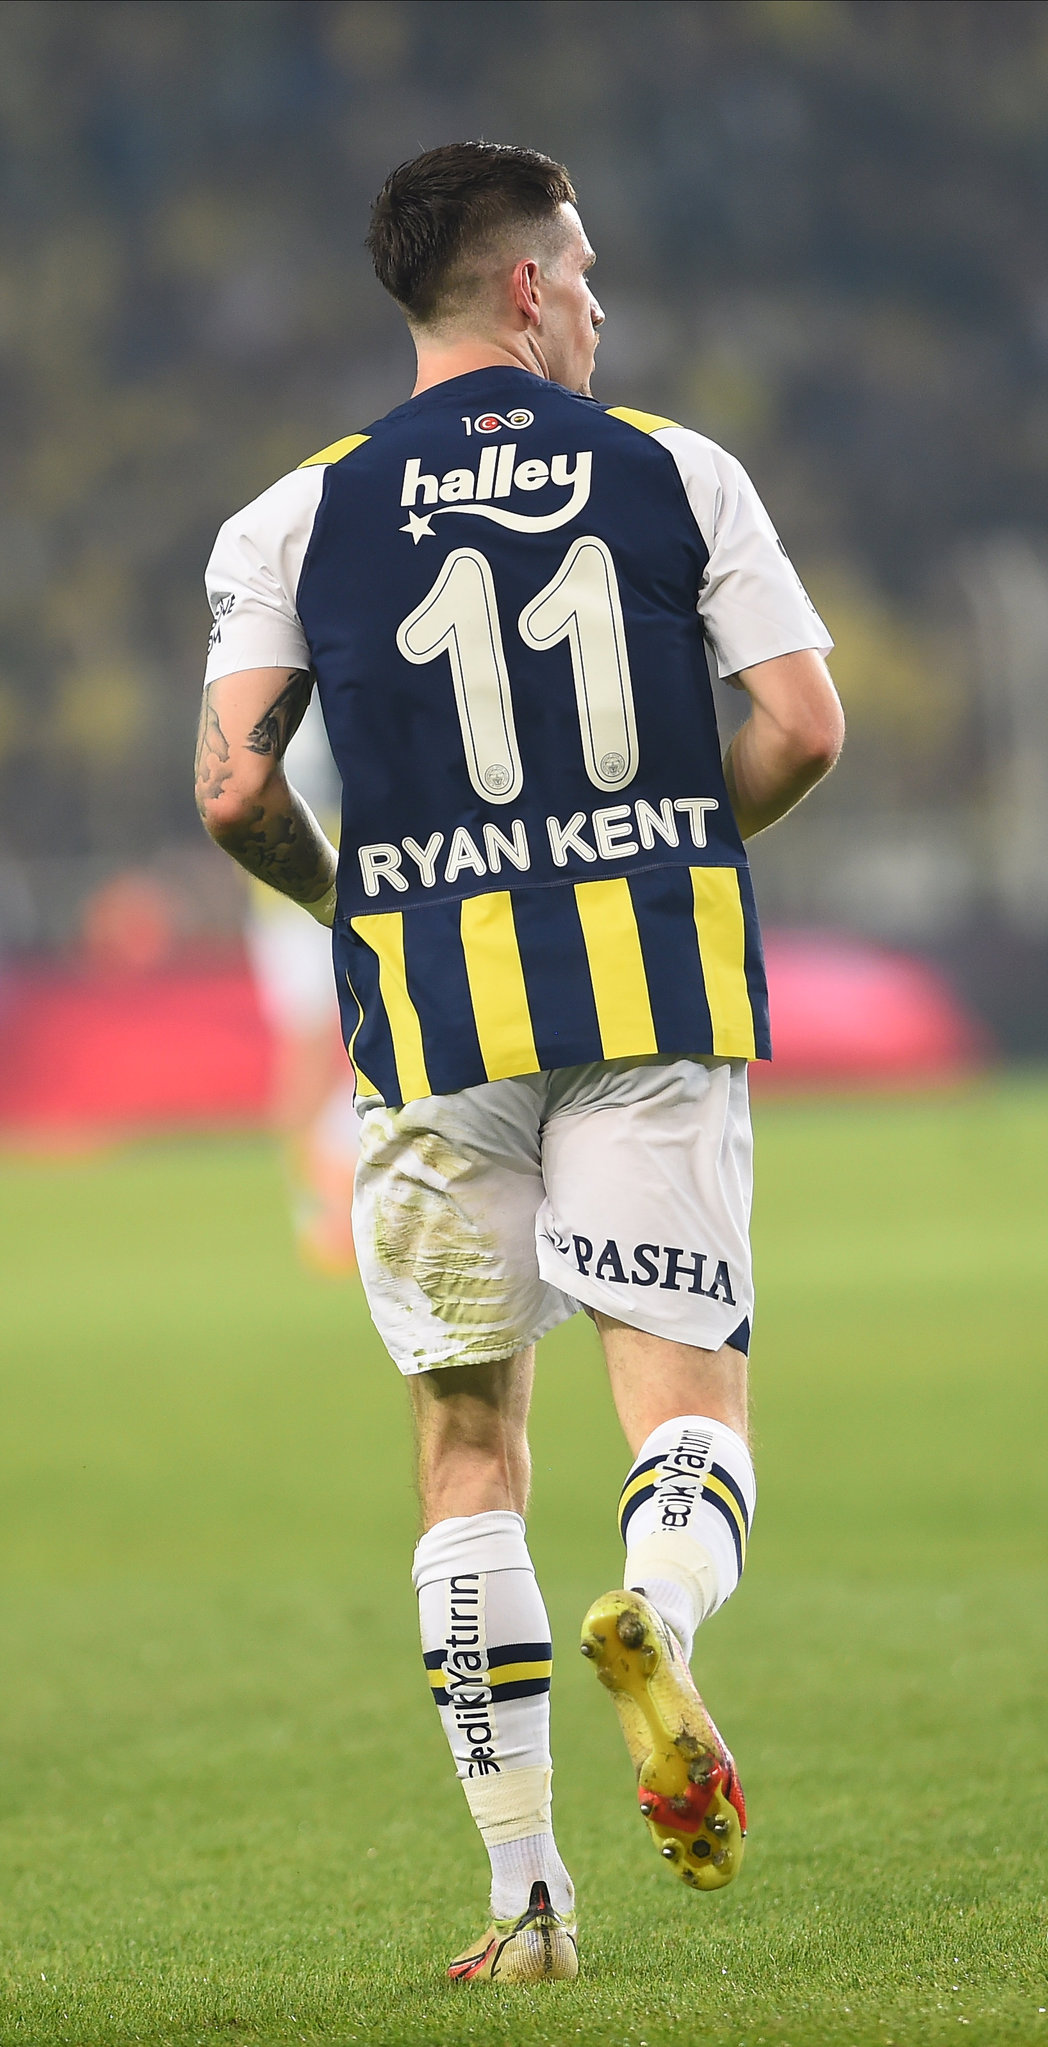 Beşiktaş’tan Fenerbahçeli yıldıza kanca! Herkes bu transferi konuşacak